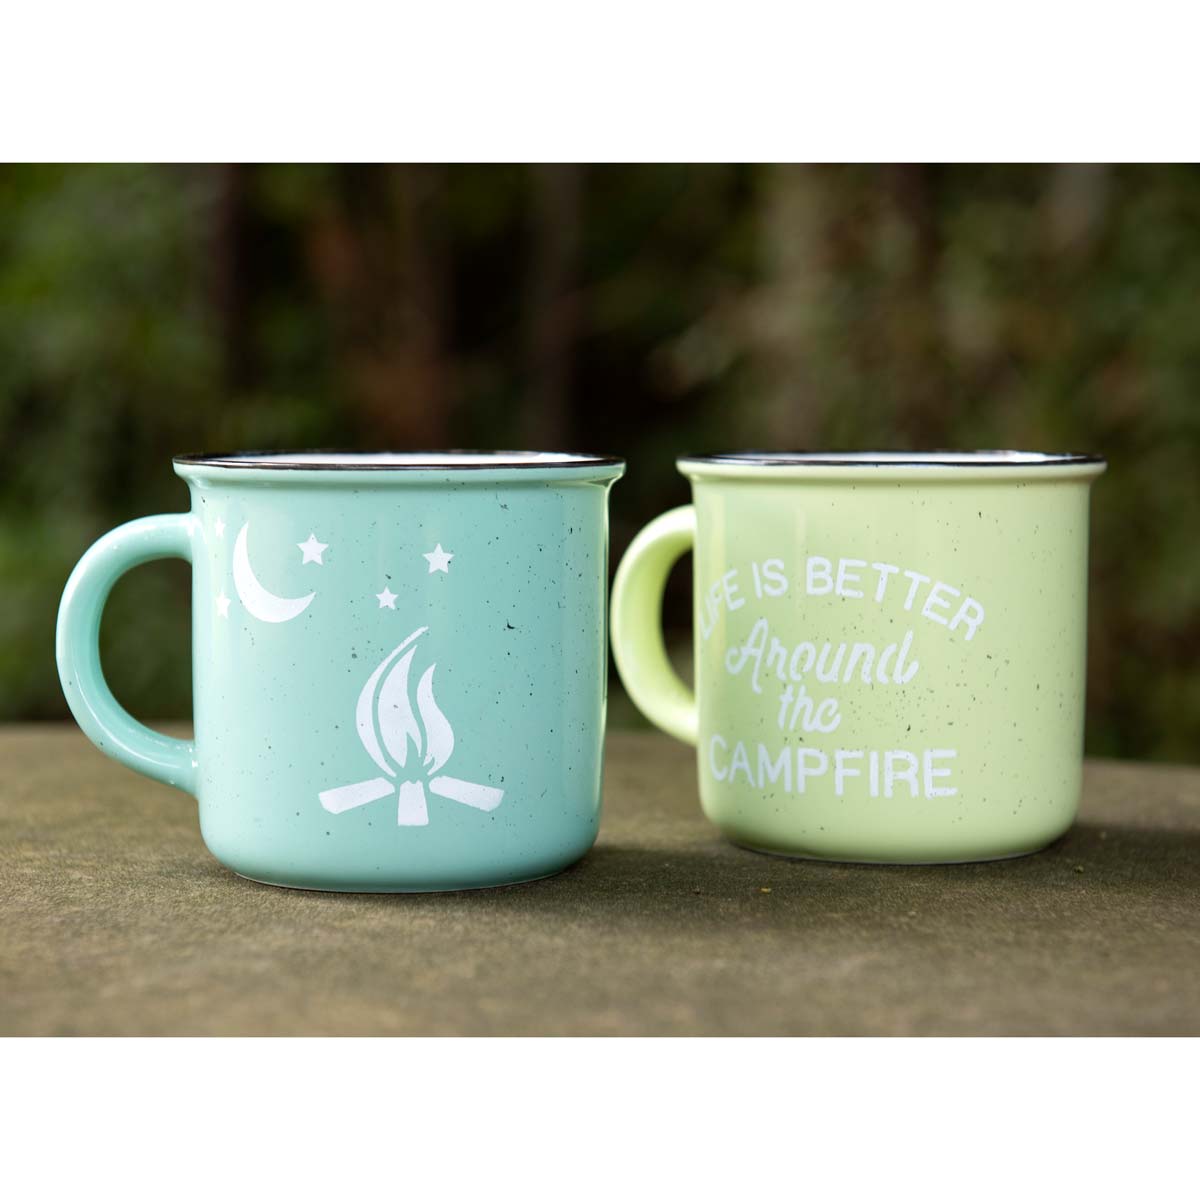 DIY Campfire Craft - Retro Mugs